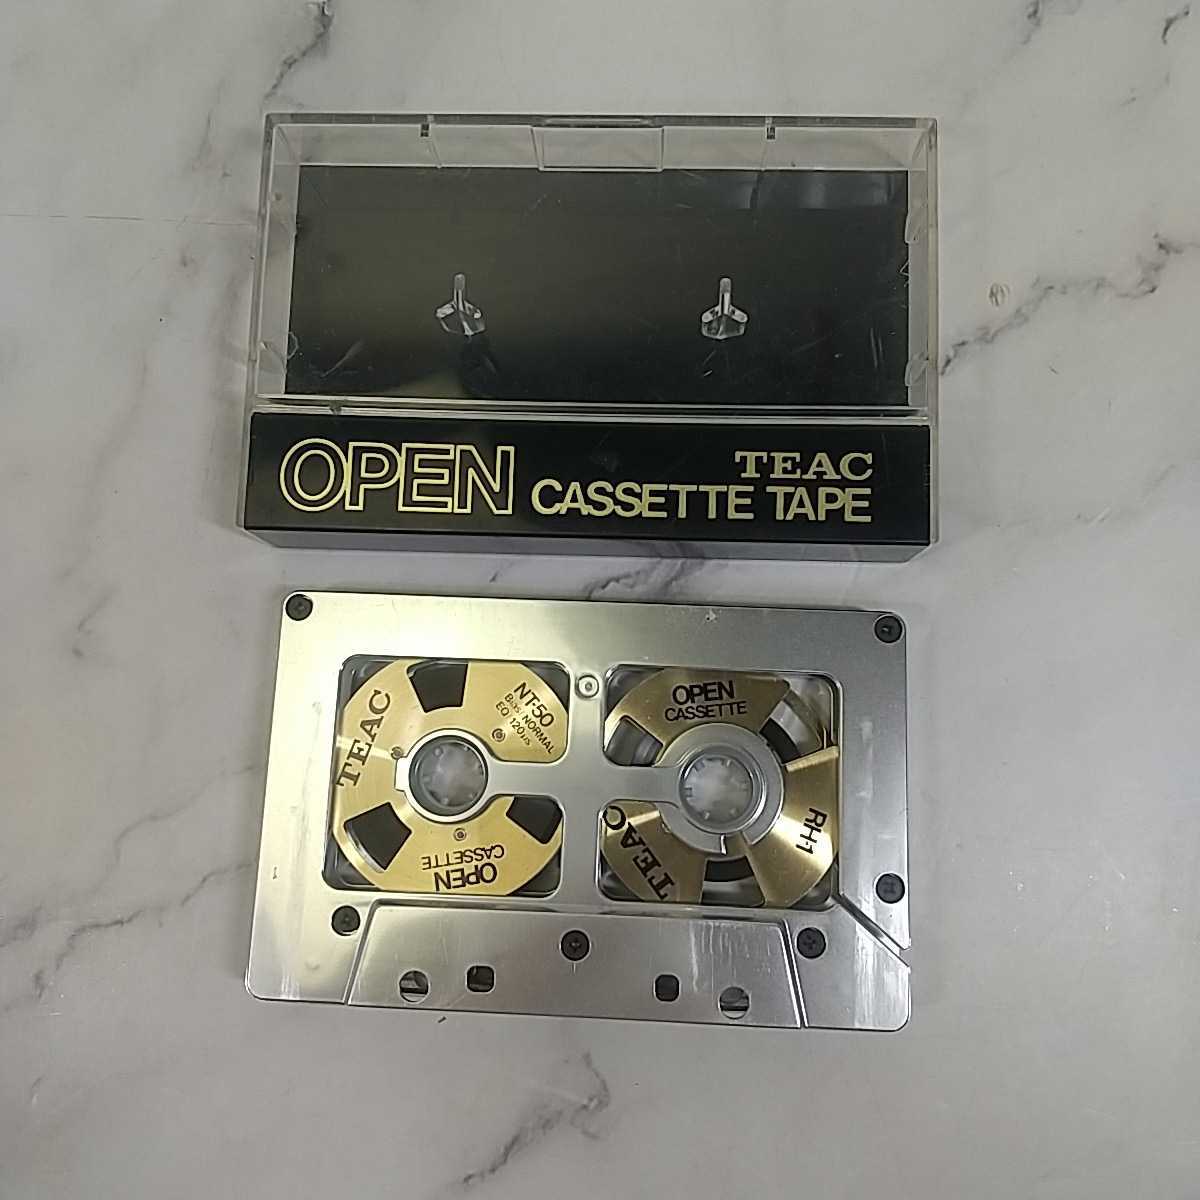 290同梱NG TEAC OPEN CASSETTE TAPE NT-50 RH-1 オープンカセットテープ セット オーカセ オープンリール カセットテープ maxell USEDの画像4